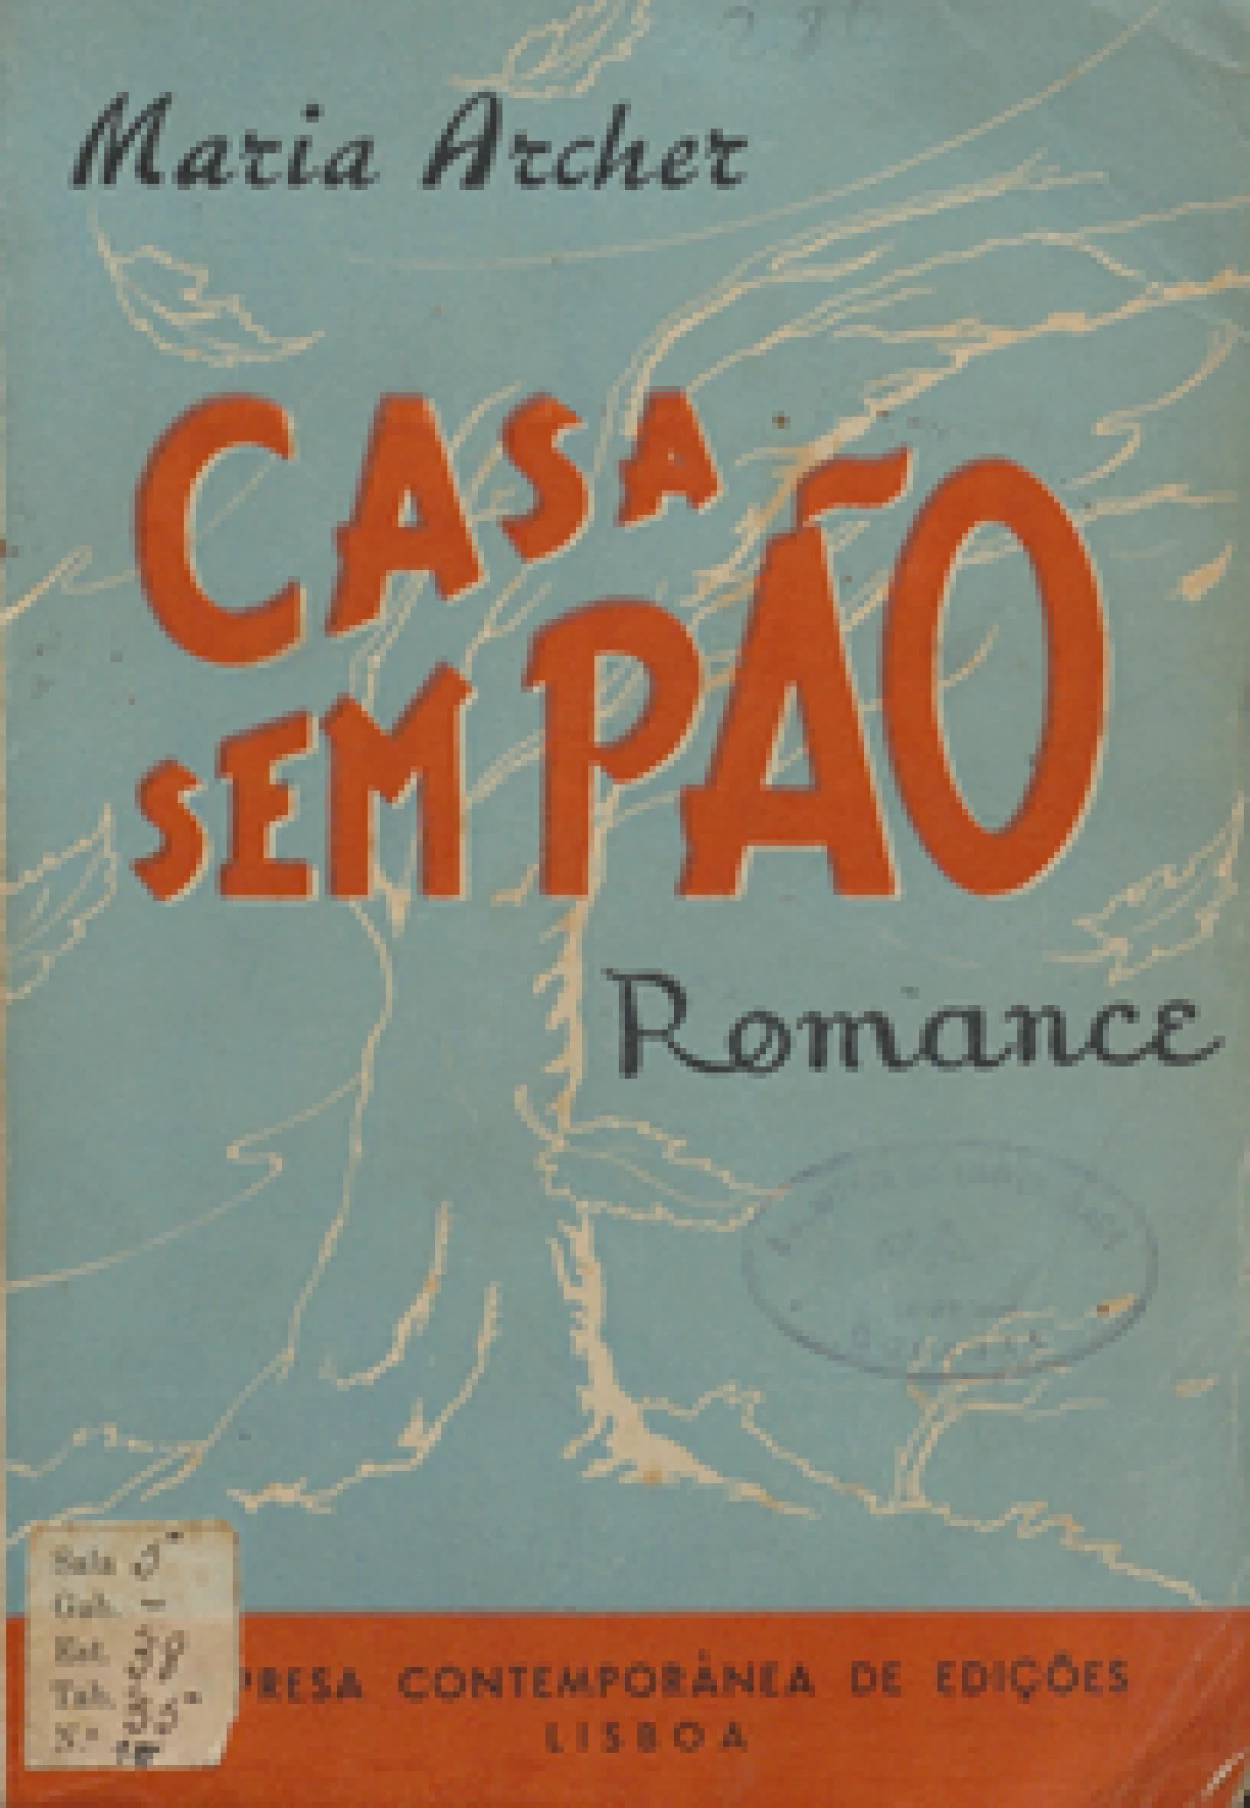 Archer, Maria, 1899–1982
Casa sem pão : romance.
Lisboa : Empresa Contemporânea de Edições, 1947.